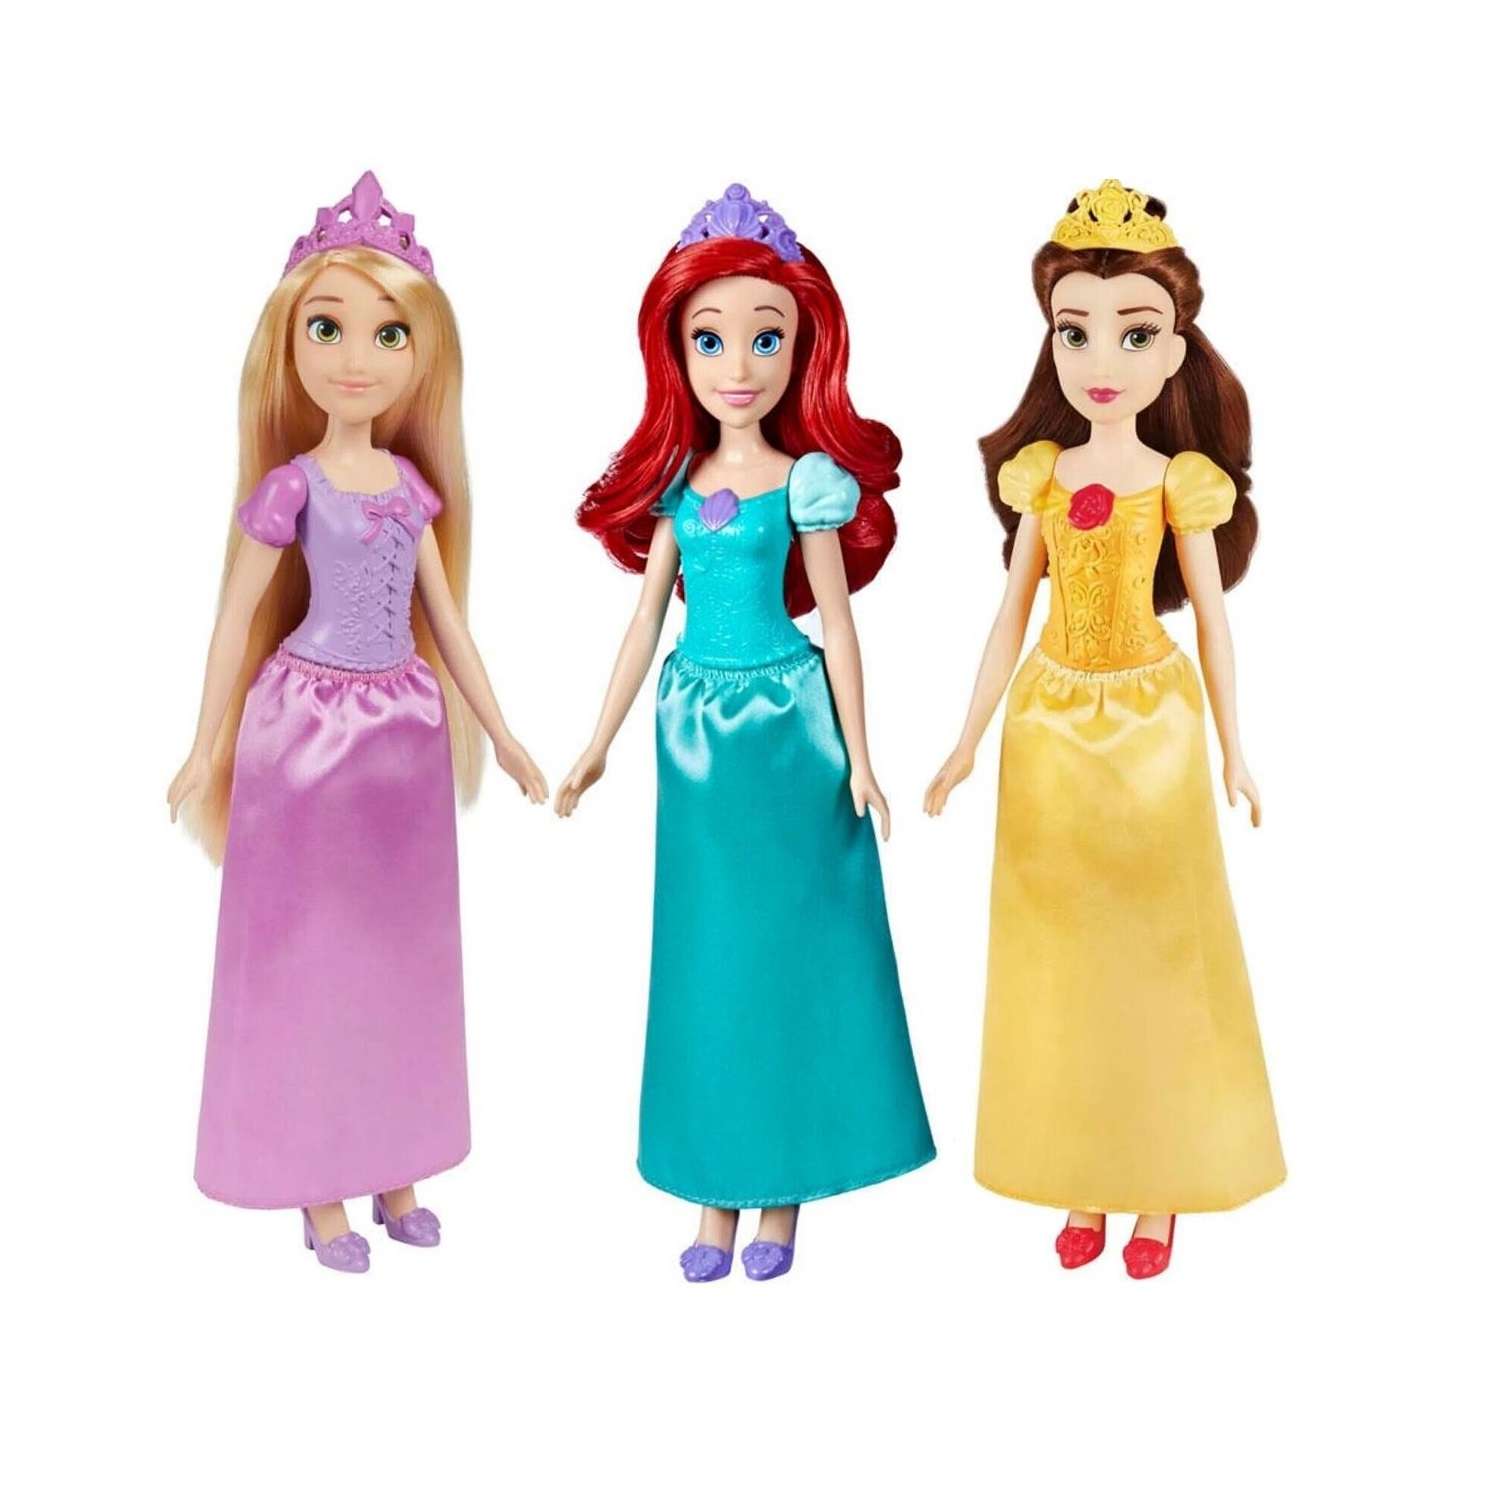 Кукла Disney Princess Hasbro в ассортименте F3382EU4 Disney Princess F3382EU4 - фото 1